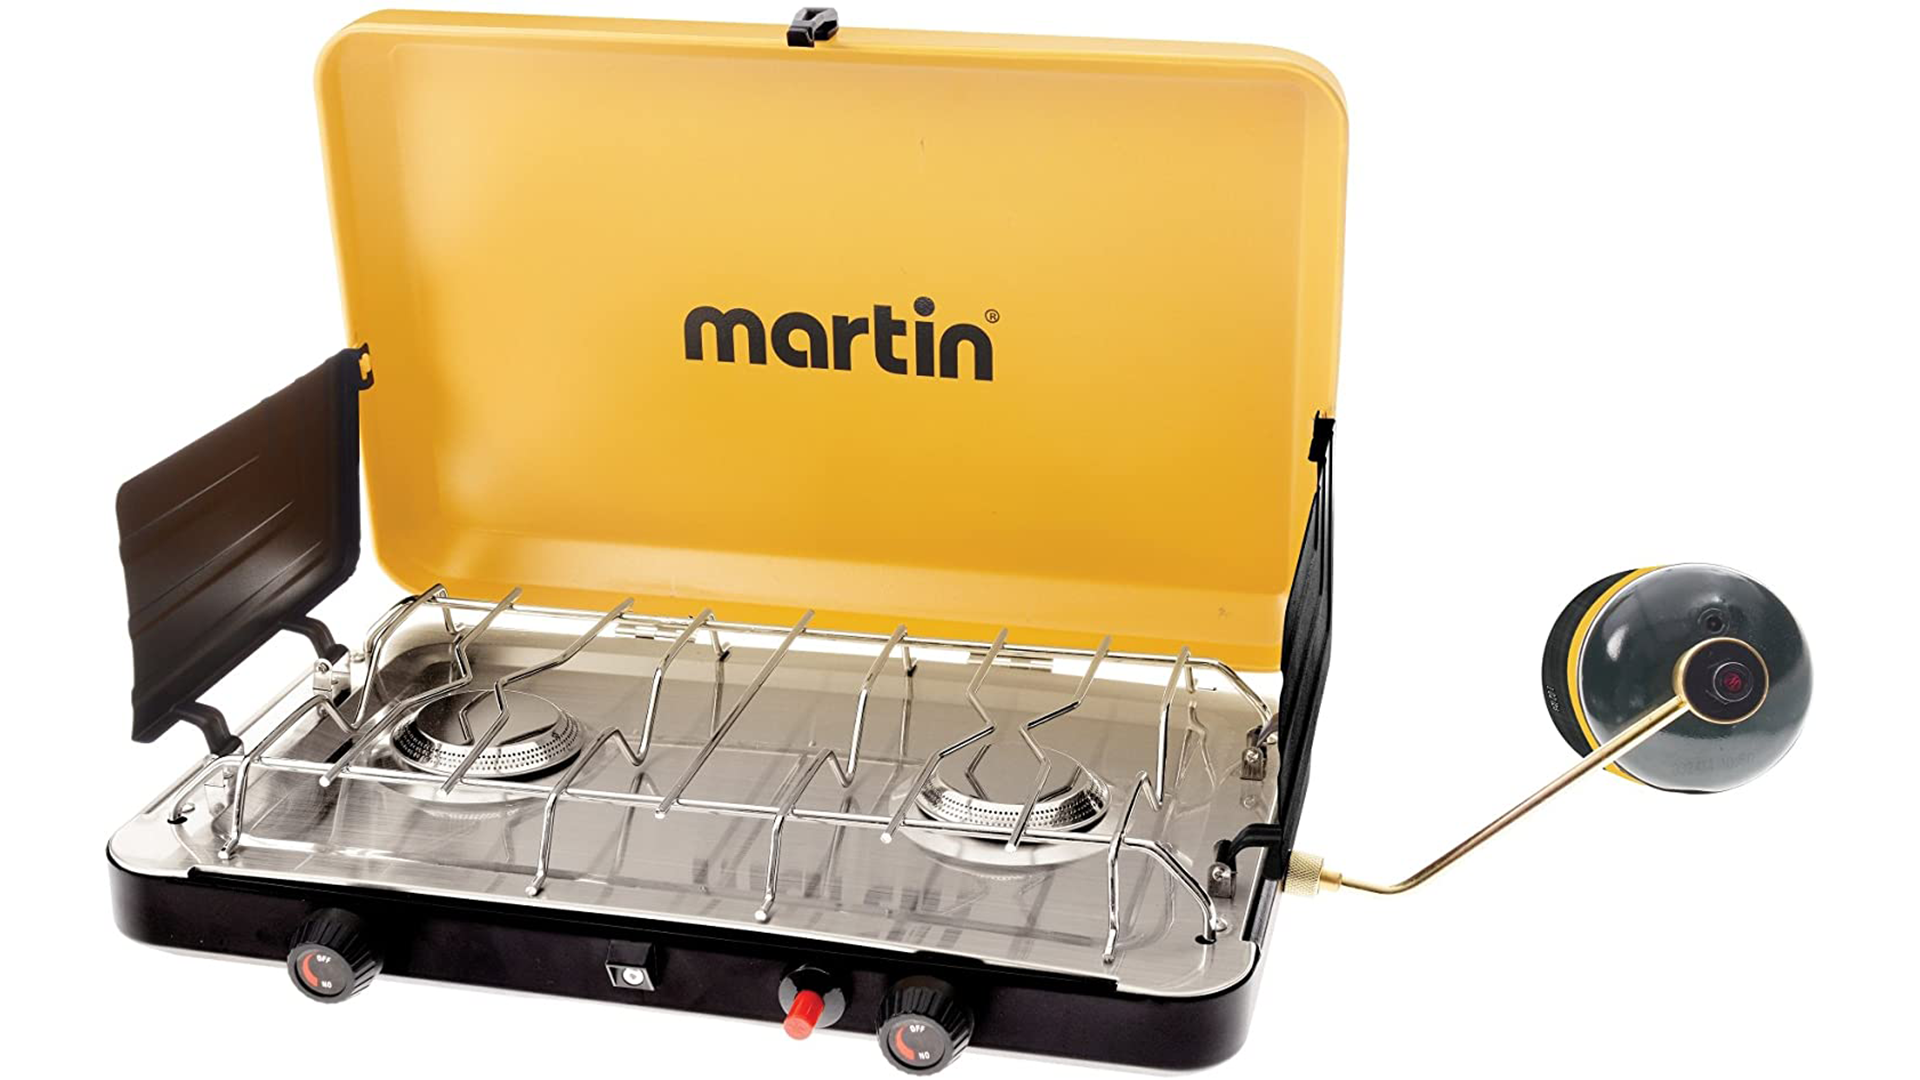 Martin MCS-250 stove - Piezoelectric ignition